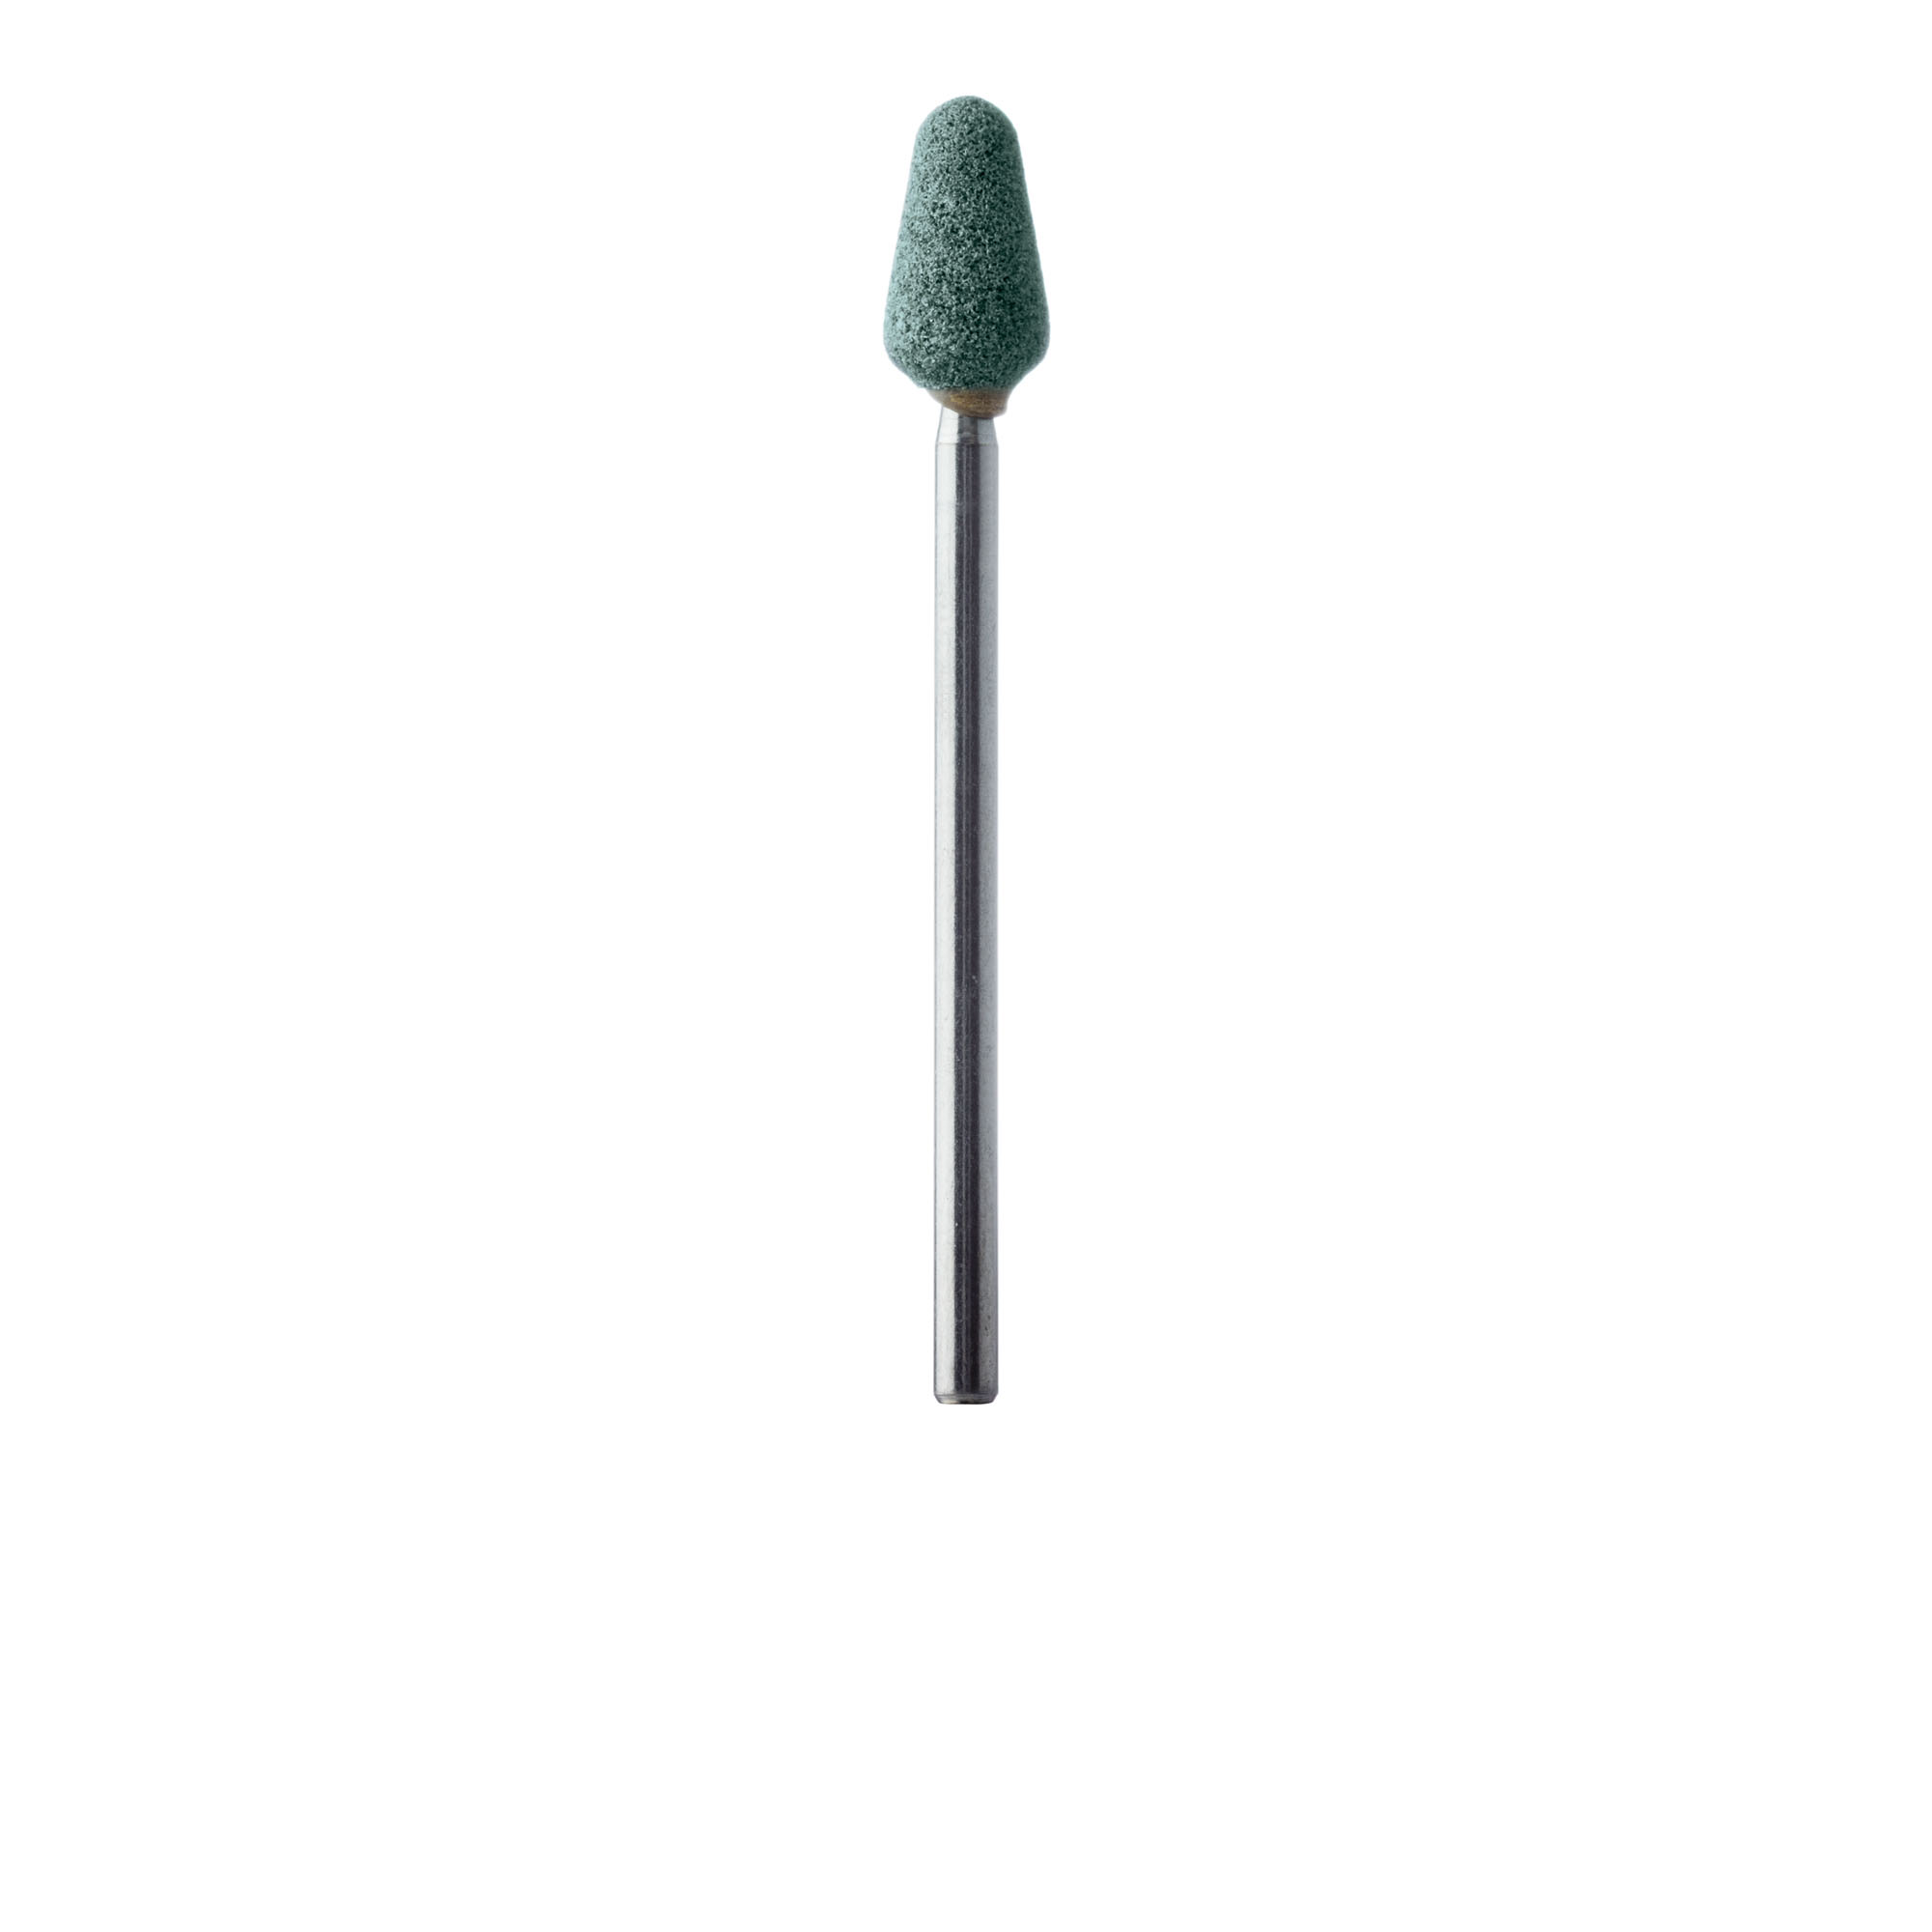 671-060-HP-GRN Abrasive, Green, Wide Nose Cone, 6mm Ø, Medium, HP